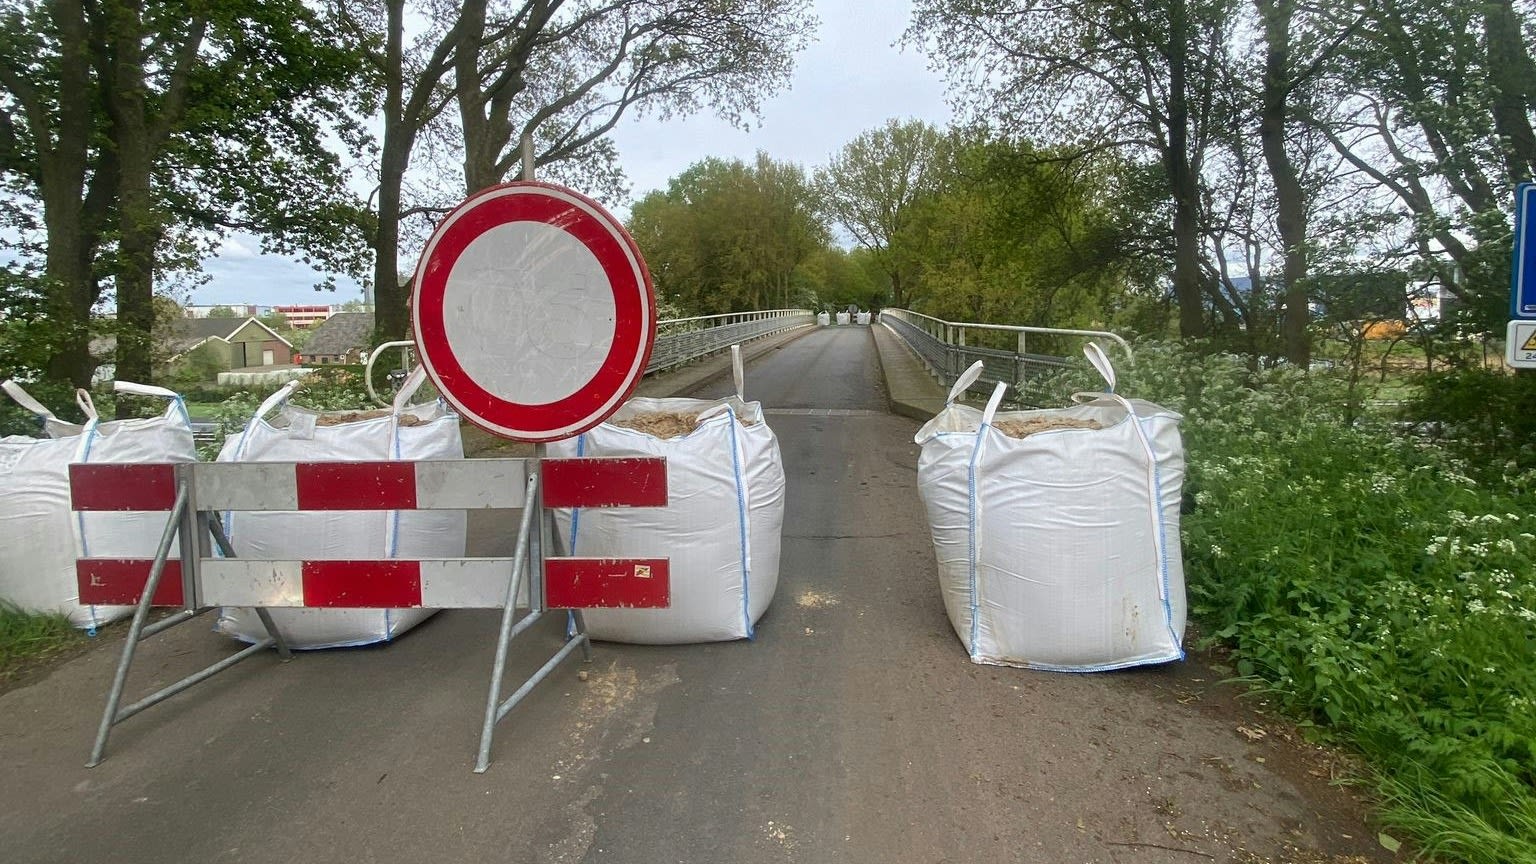 Brug over A28 in Nijkerk nu helemaal dicht: 'Niet meer veilig voor voetgangers'